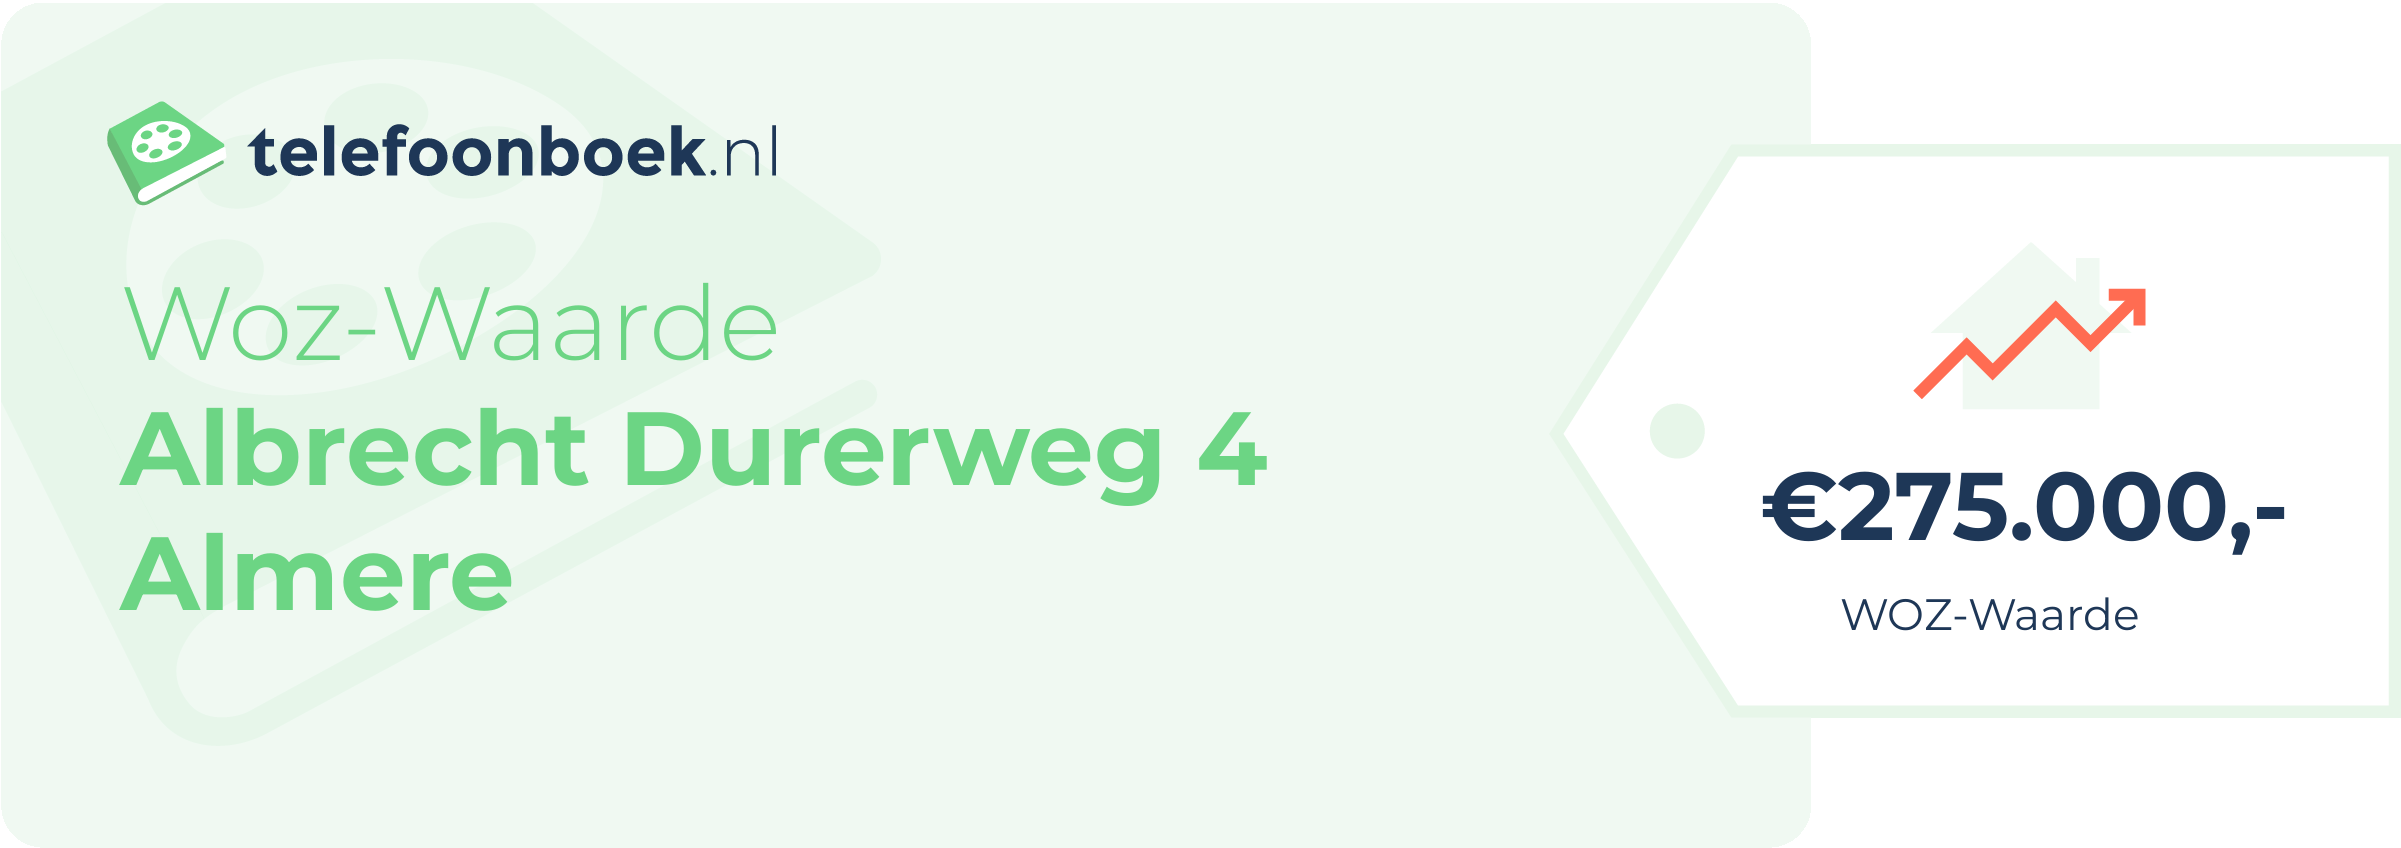 WOZ-waarde Albrecht Durerweg 4 Almere